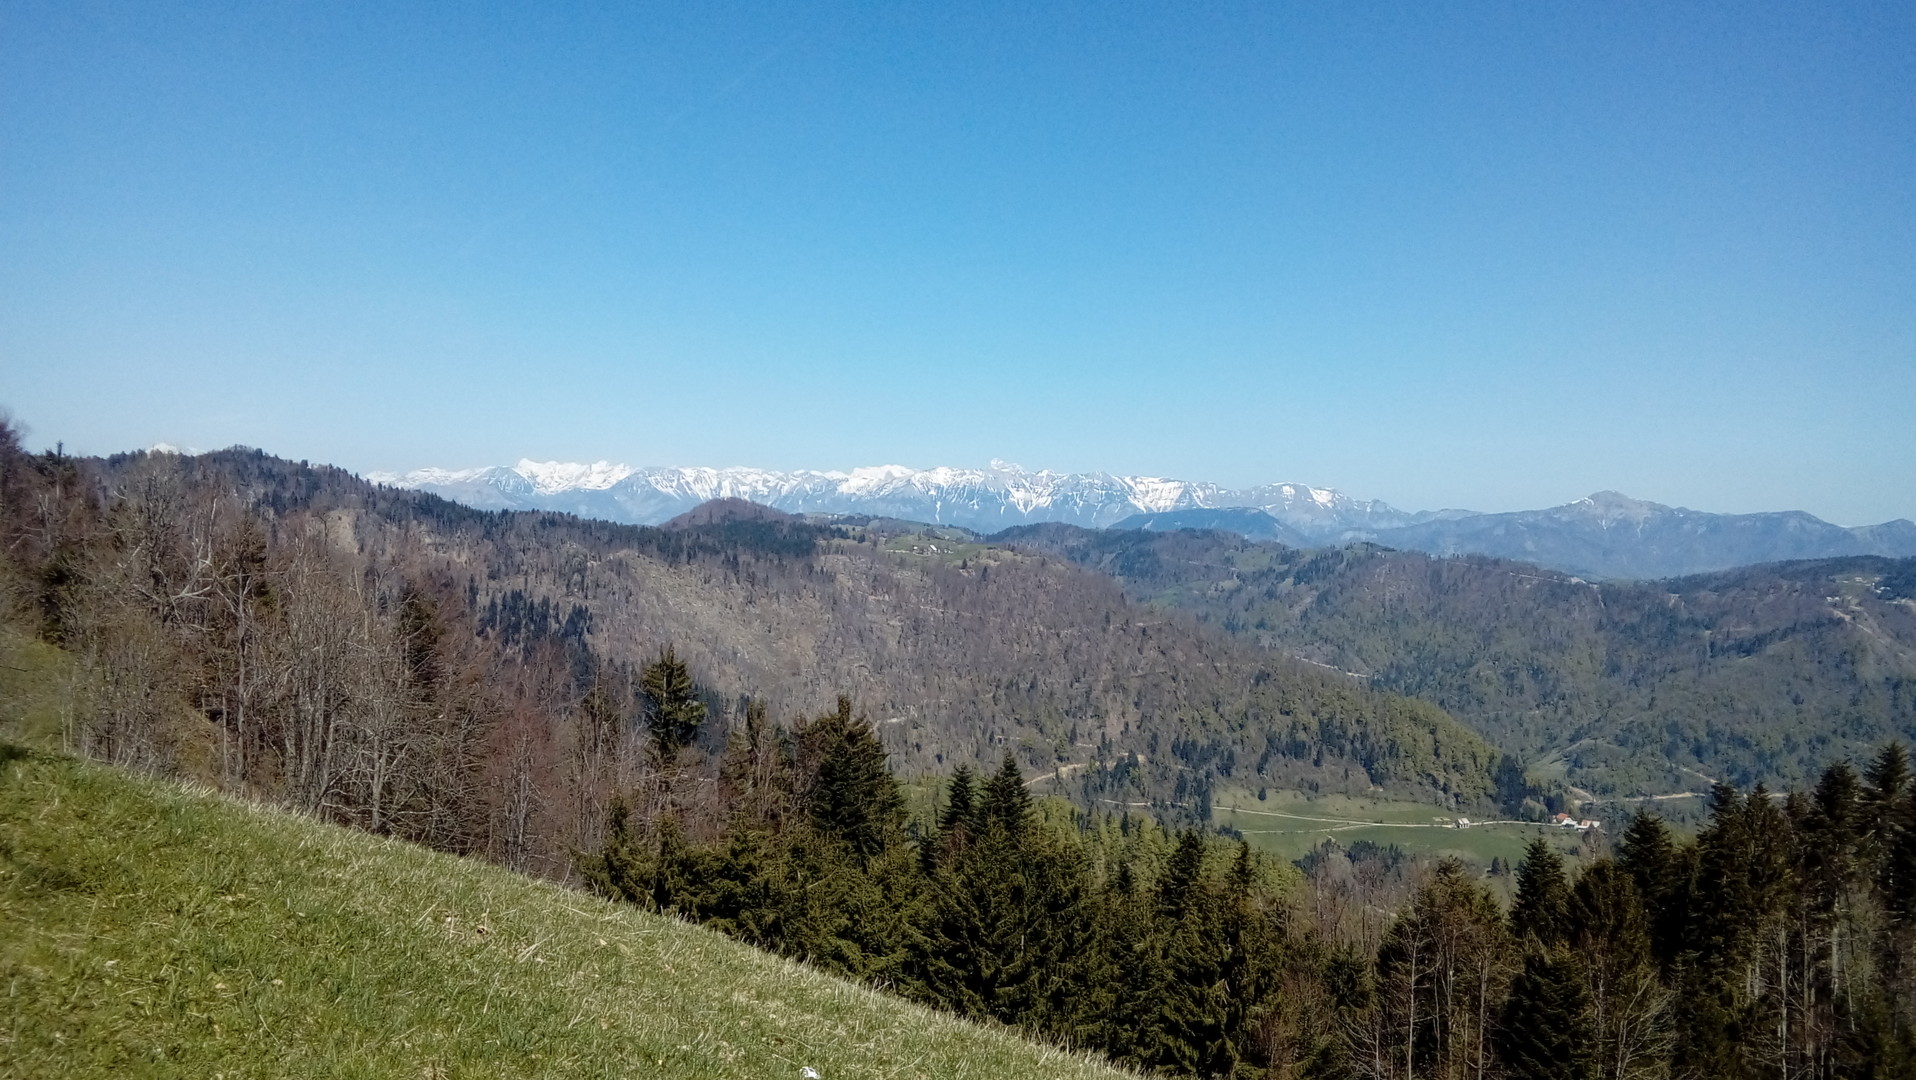 Blick Richtung Alpen von der Antenne aus.